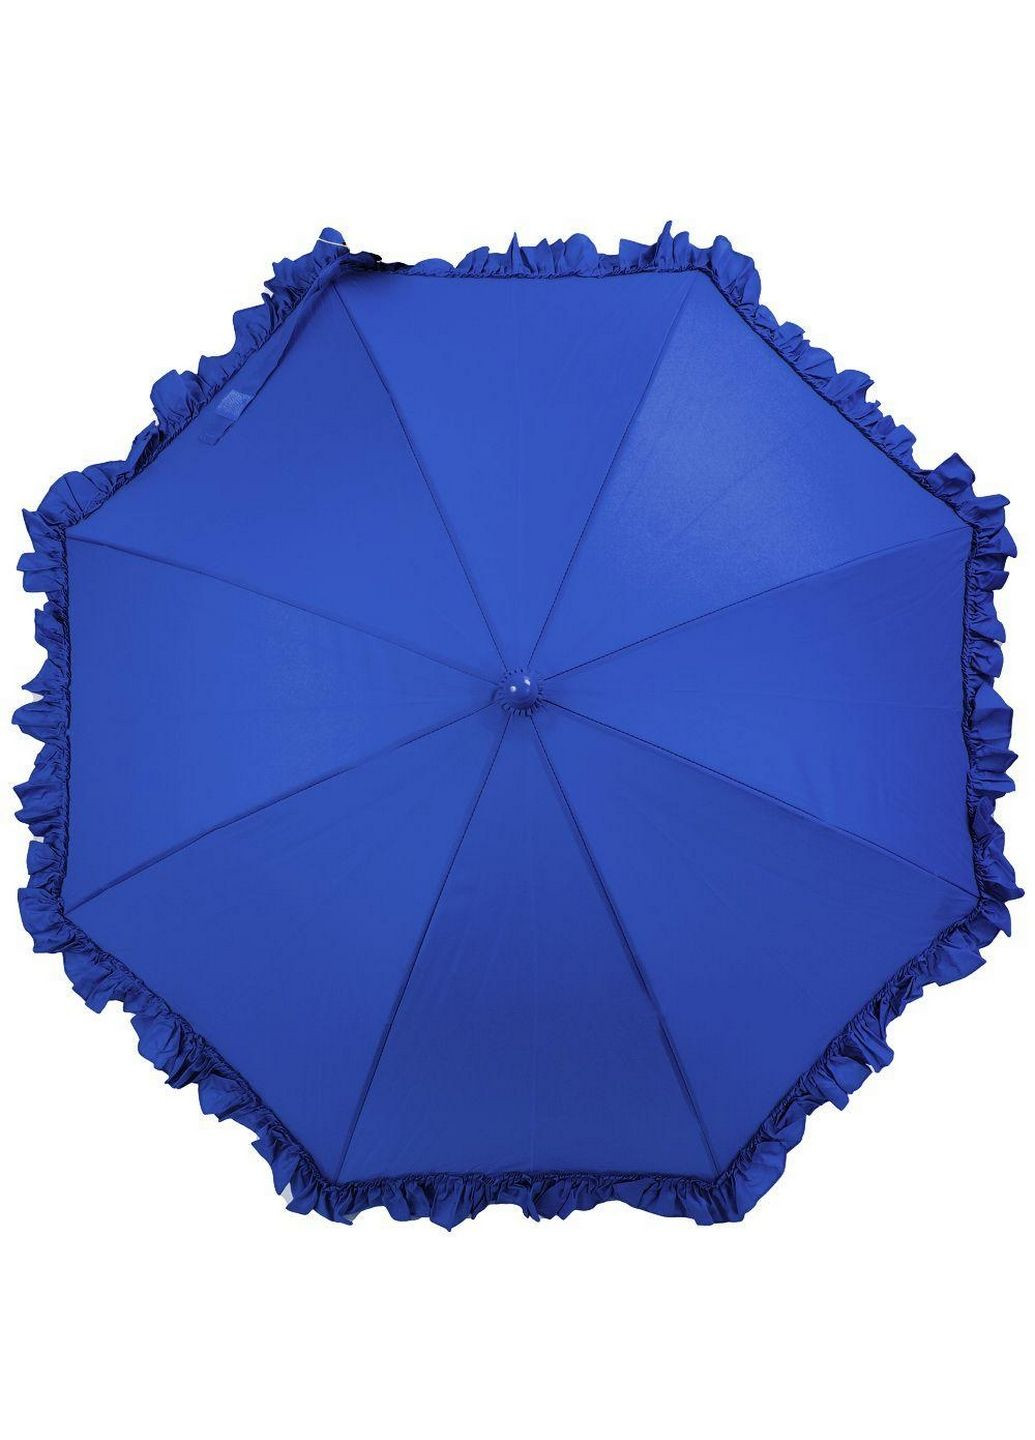 Детский зонт-трость полуавтомат Airton (282592879)